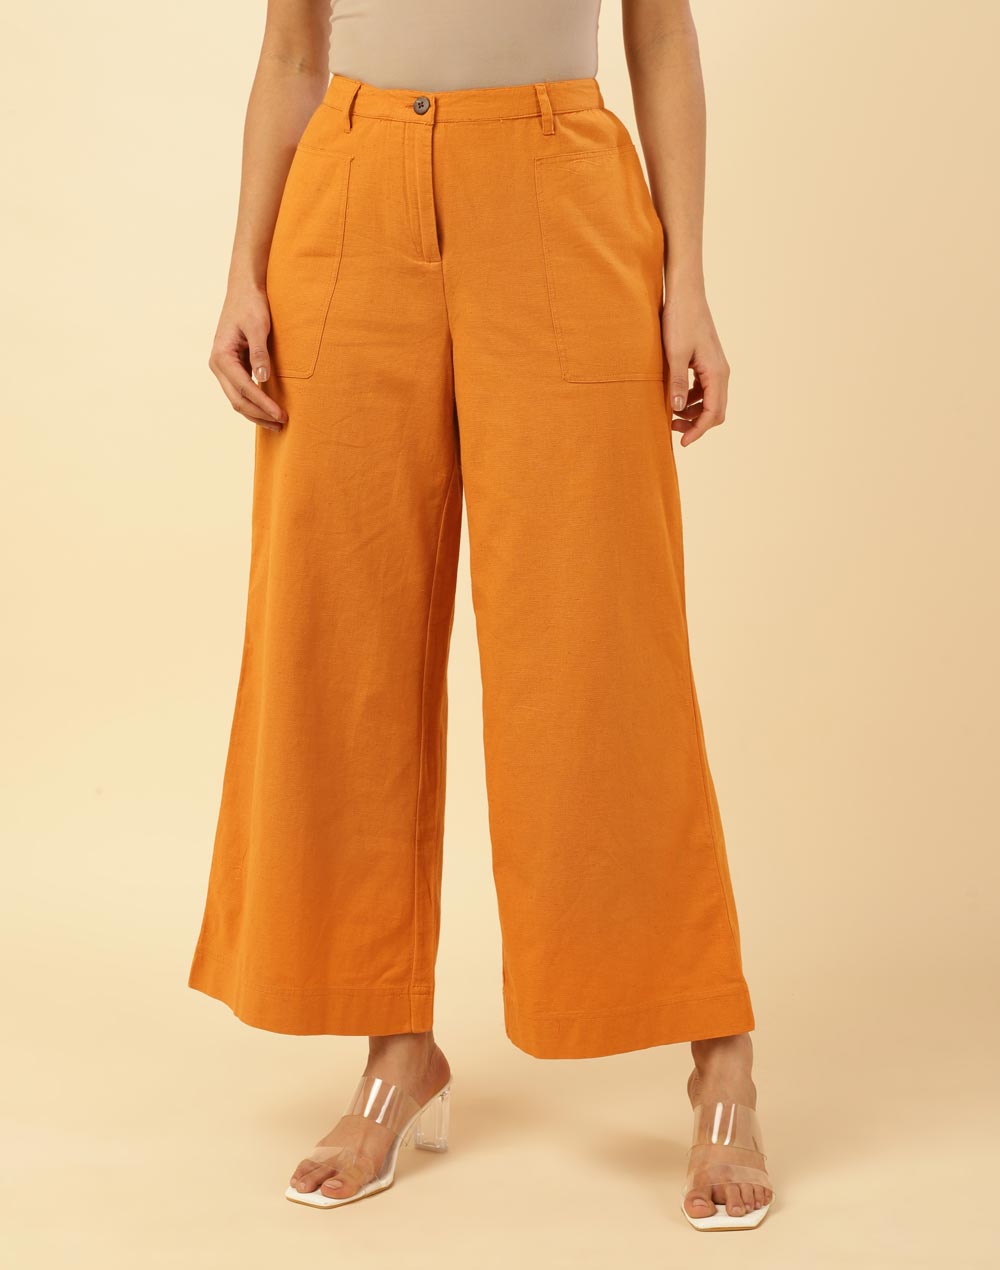 Est 1946, Pants & Jumpsuits, Est 946 Tan Womens Capri Pants Size 12